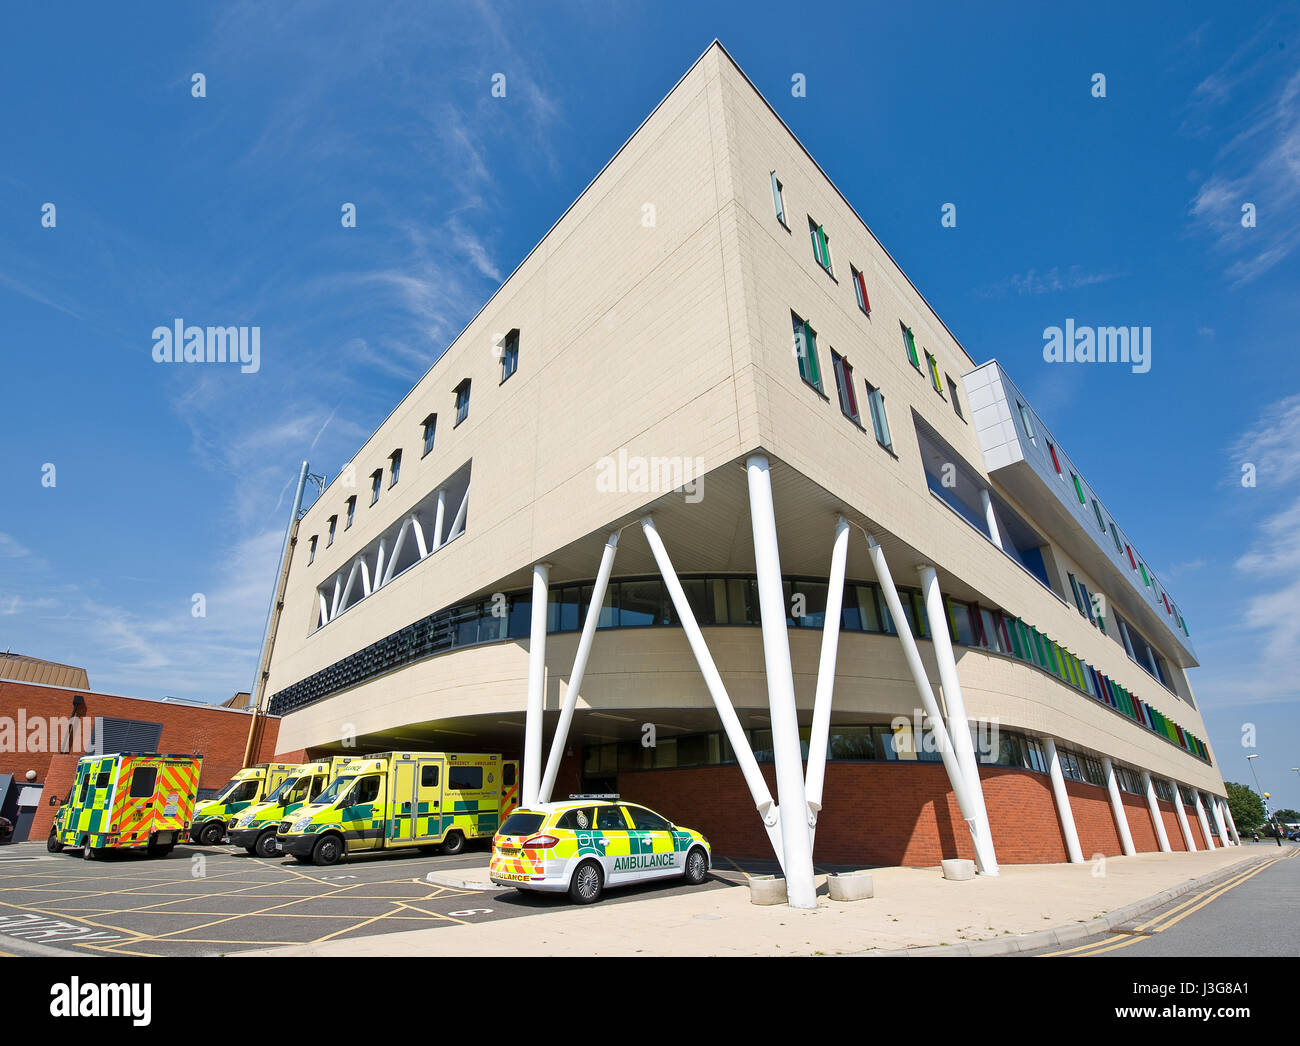 Ipswich hospital Ambulance bay Stock Photo